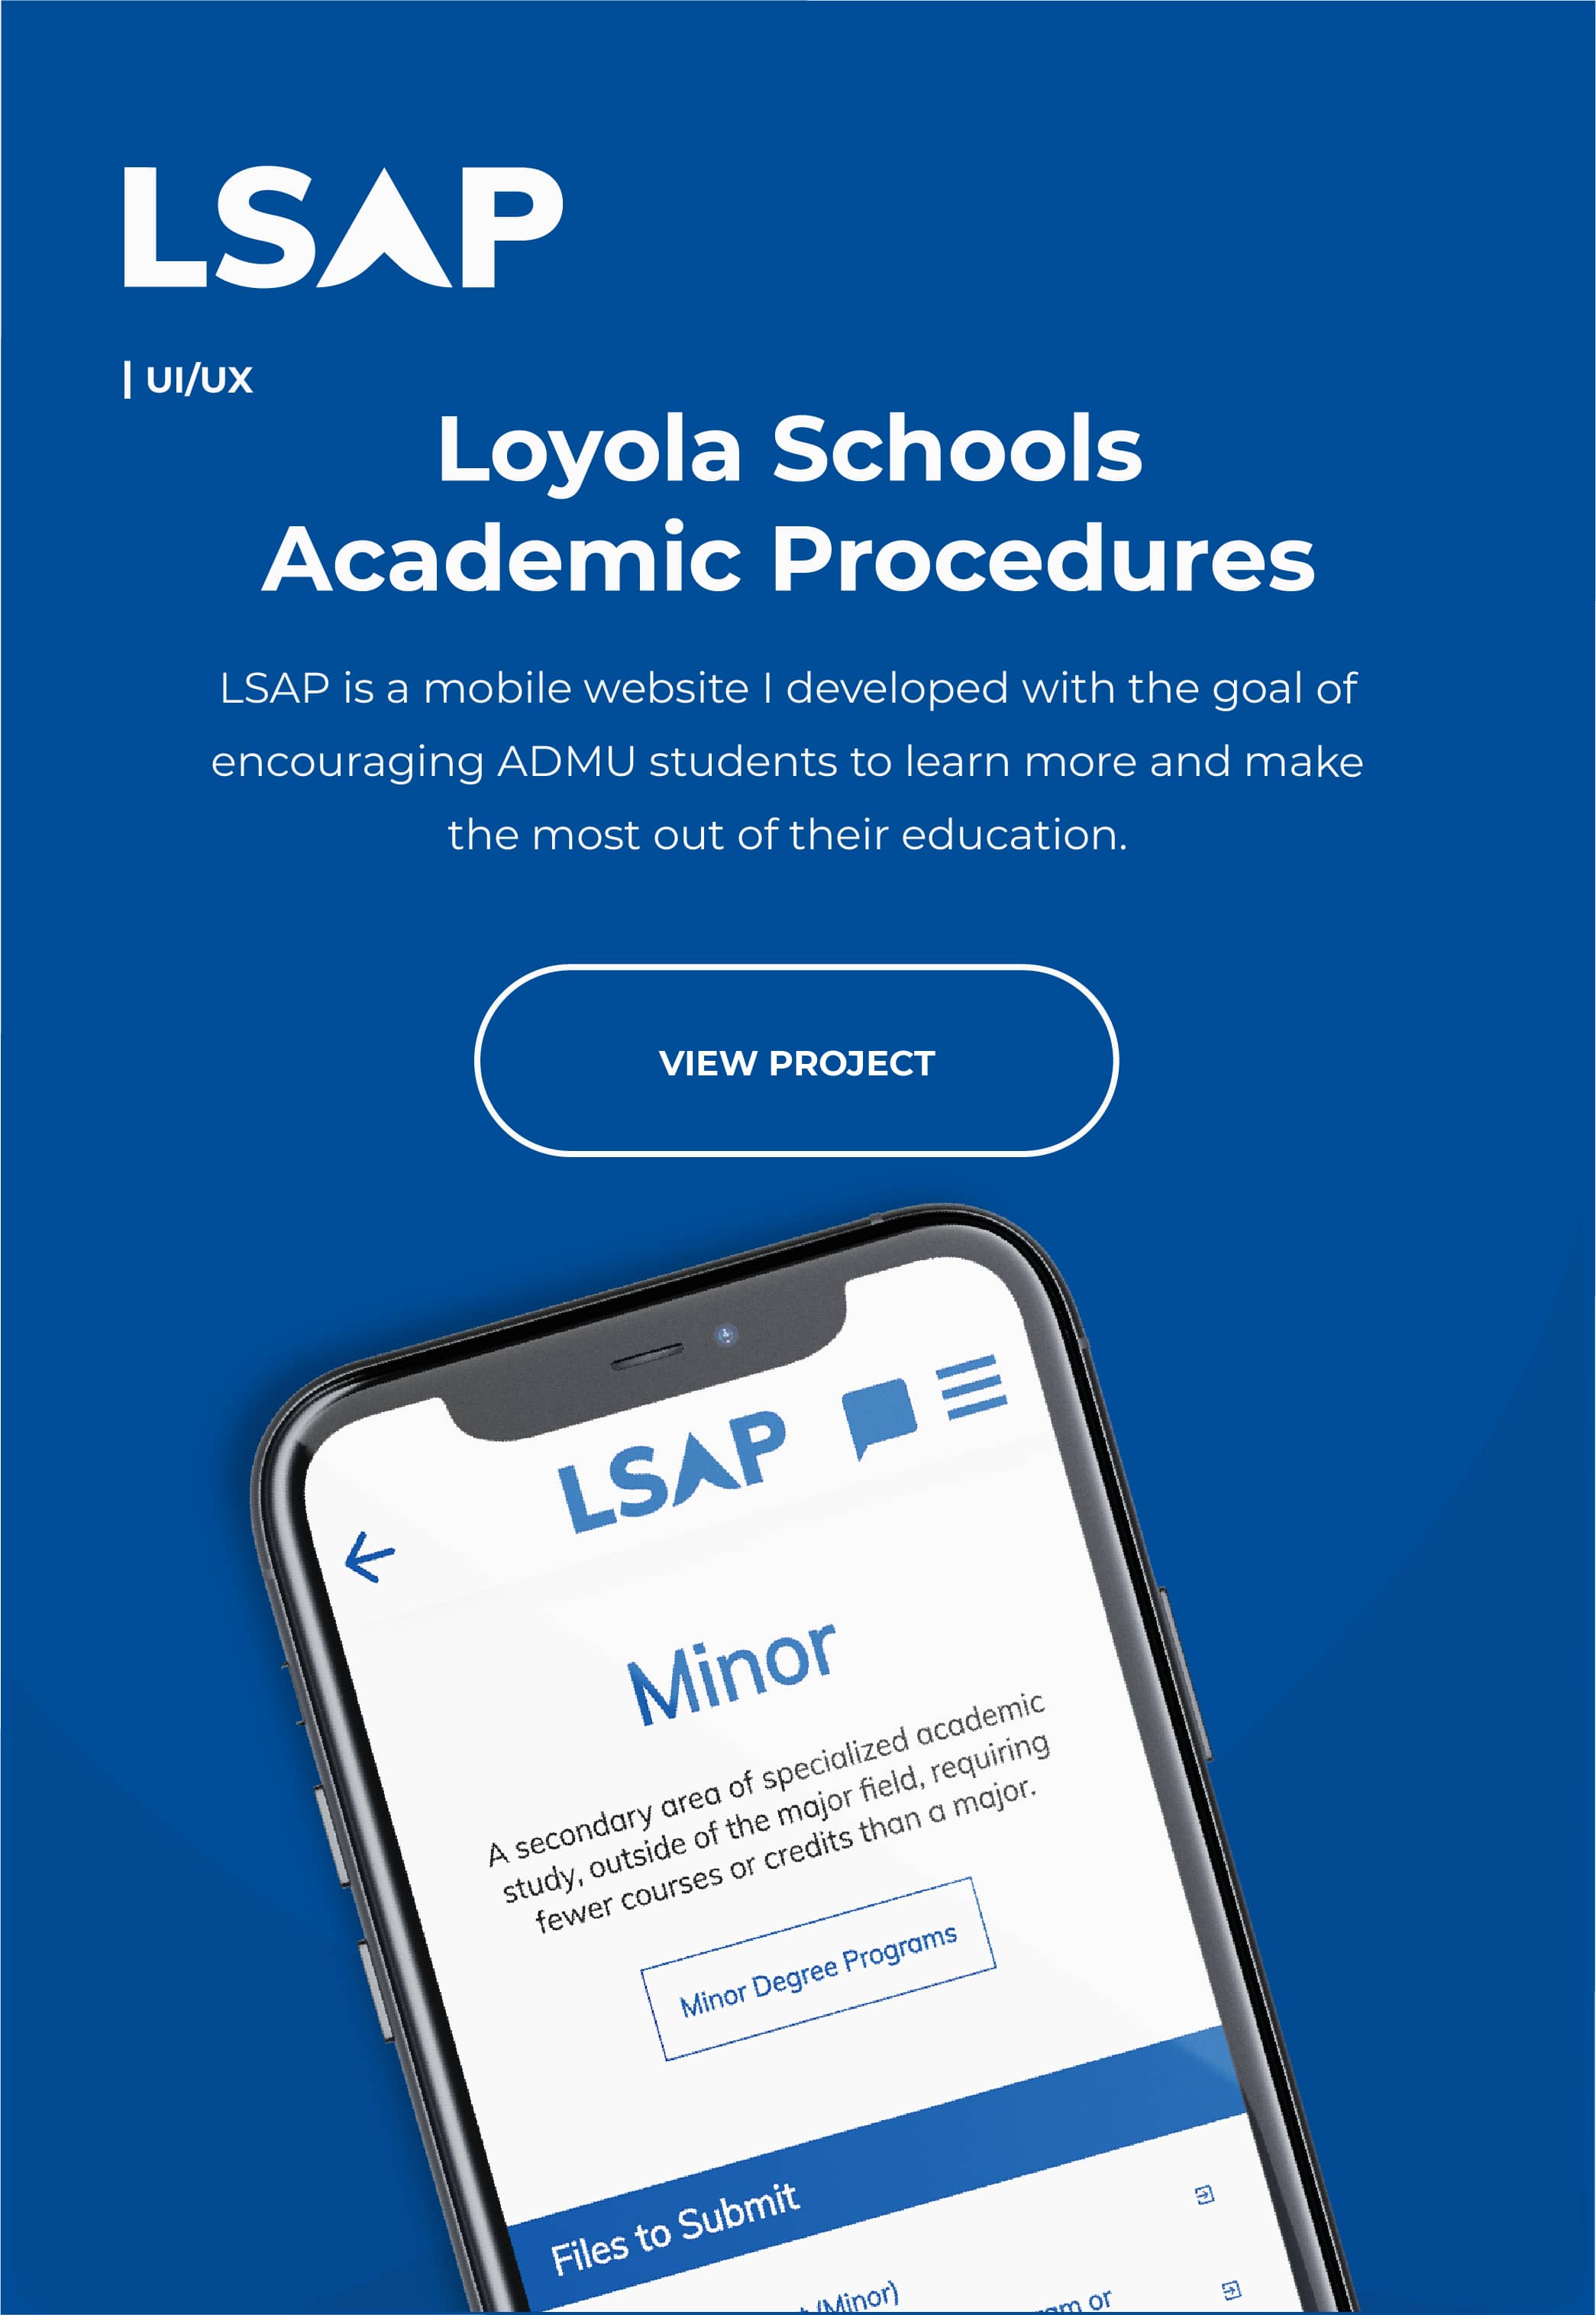 Read about LSAP